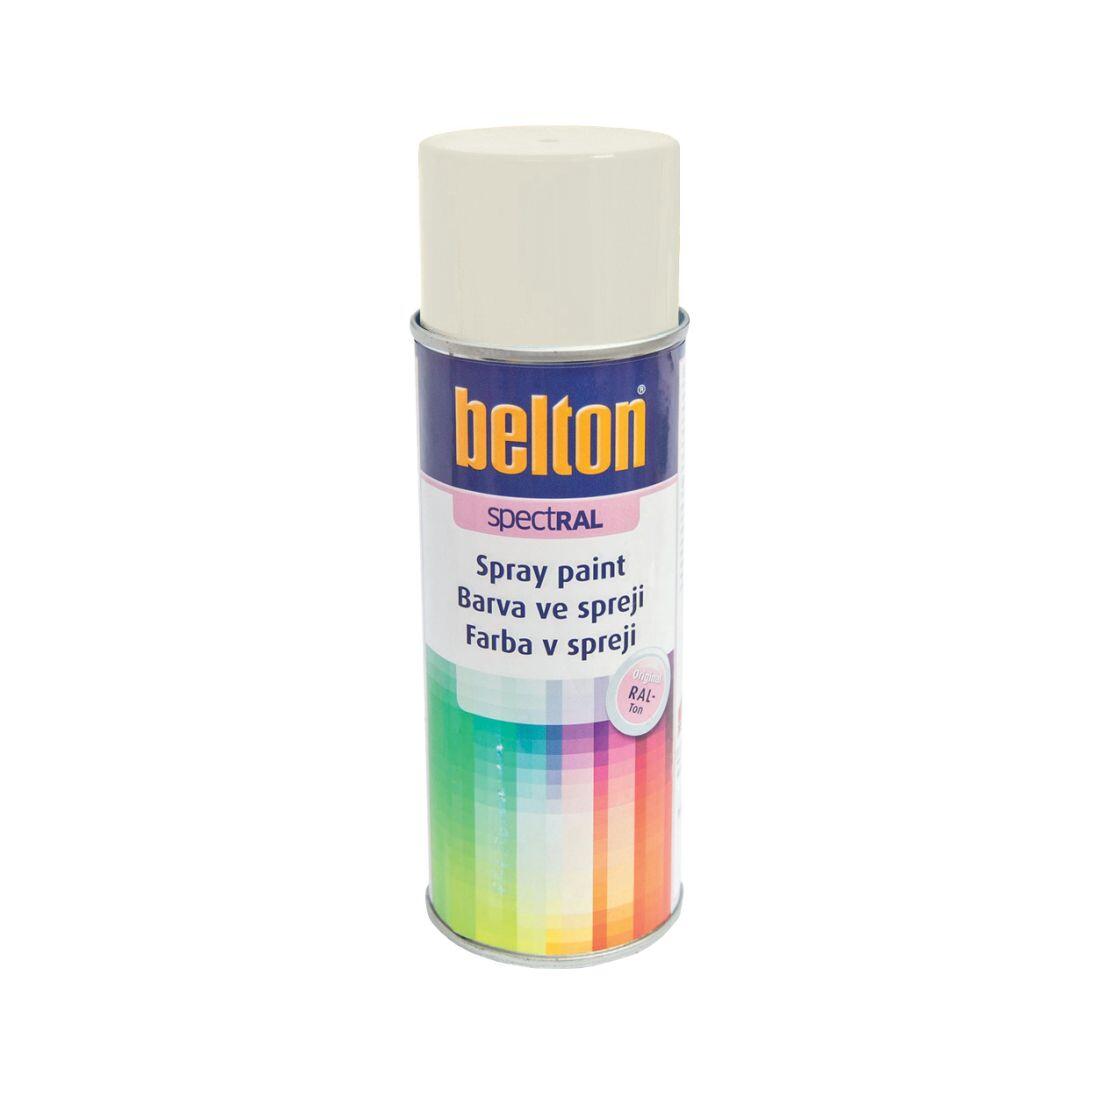 barva ve spreji BELTON RAL 9010, 400ml BÍ 0.31 Kg MAXMIX Sklad14 825130 18